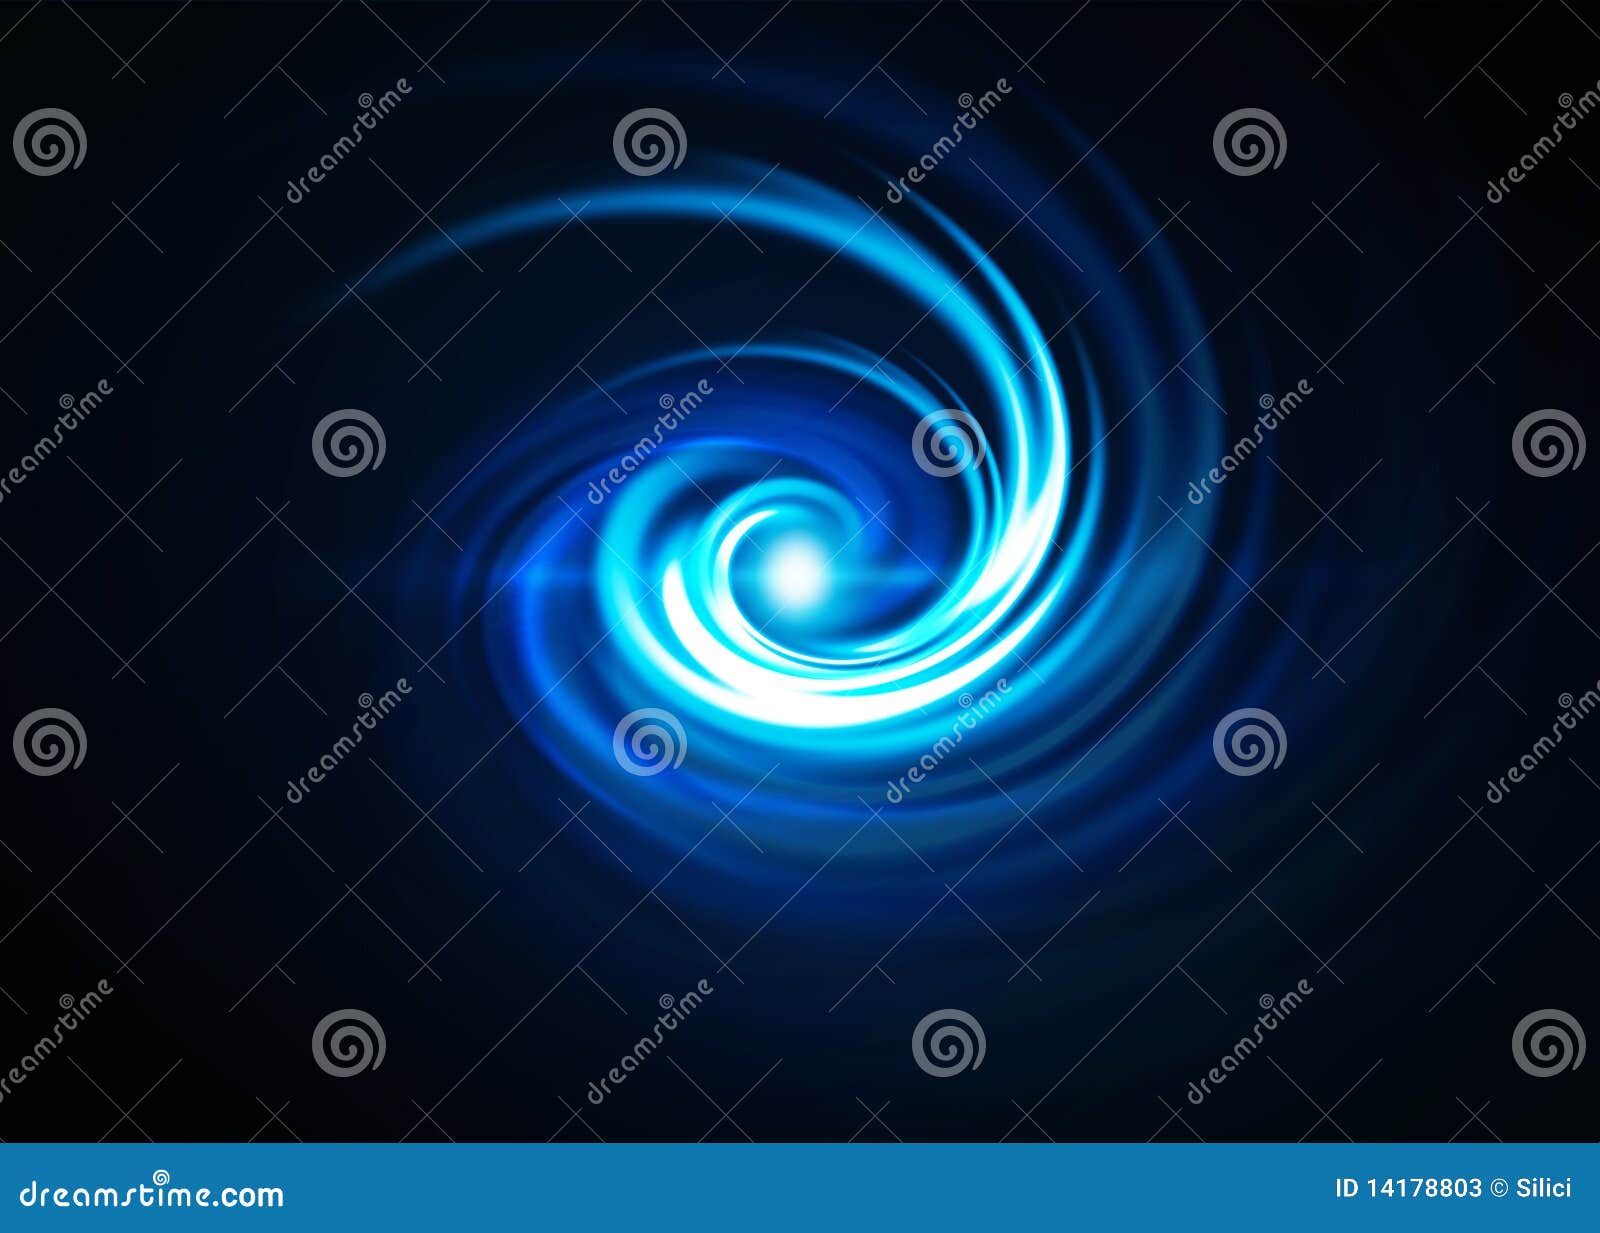 spiralling blue vortex